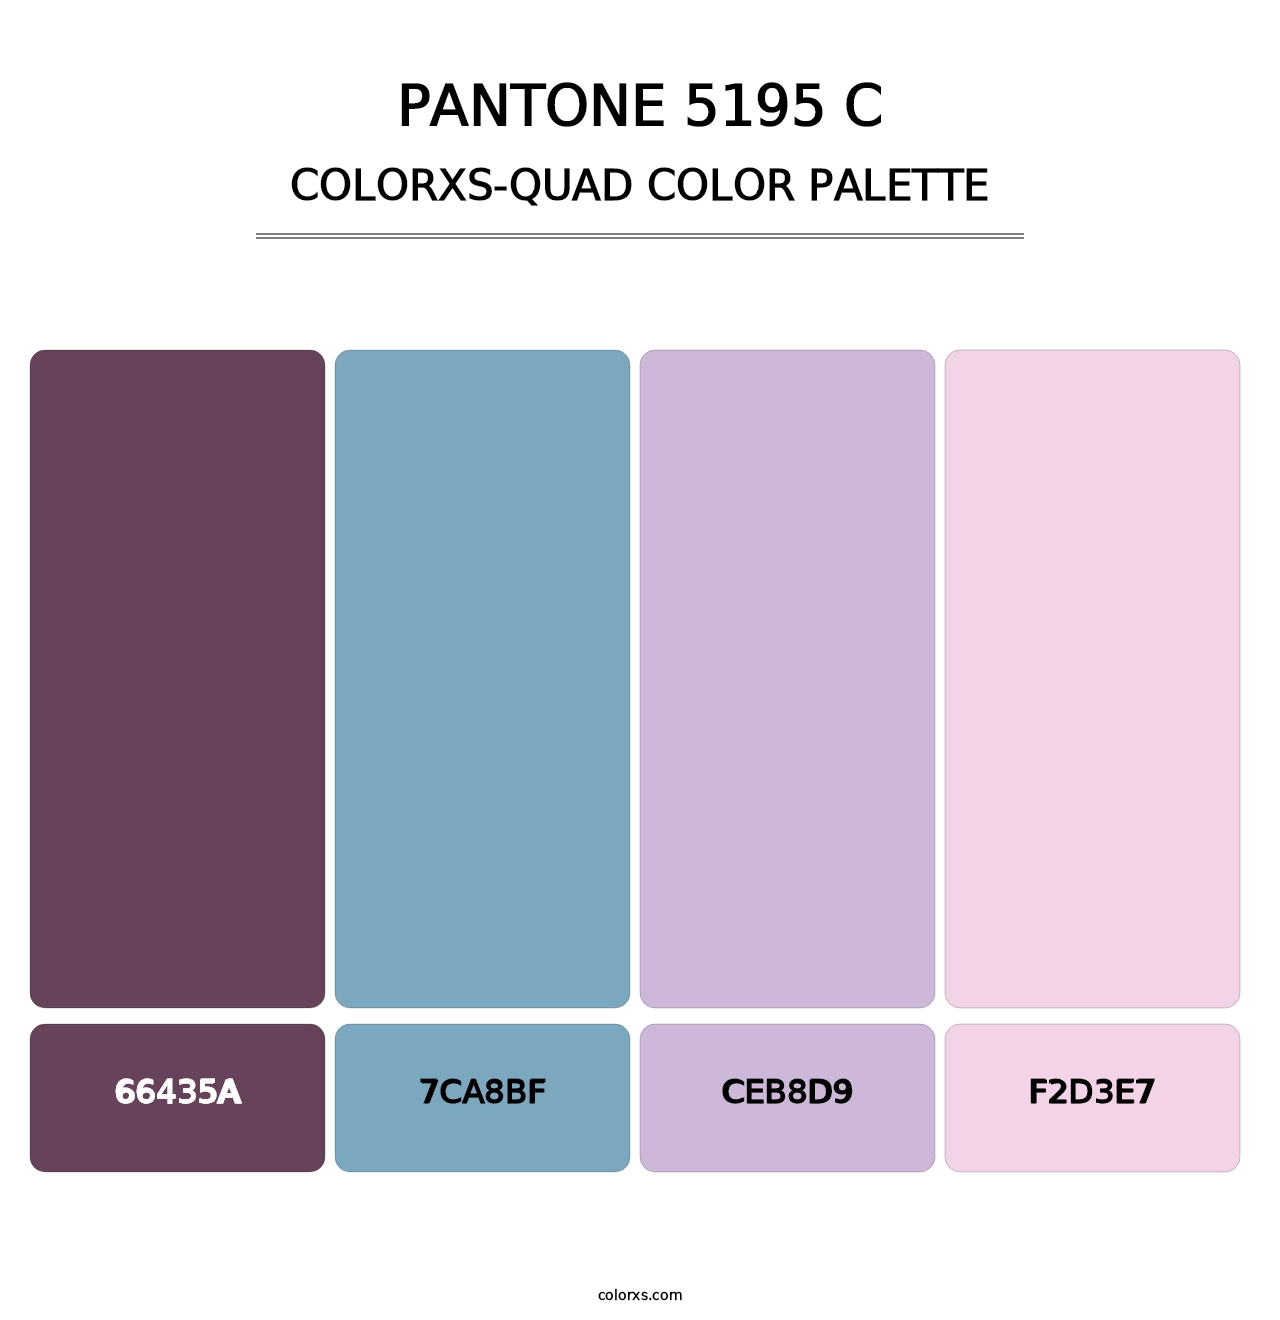 PANTONE 5195 C - Colorxs Quad Palette